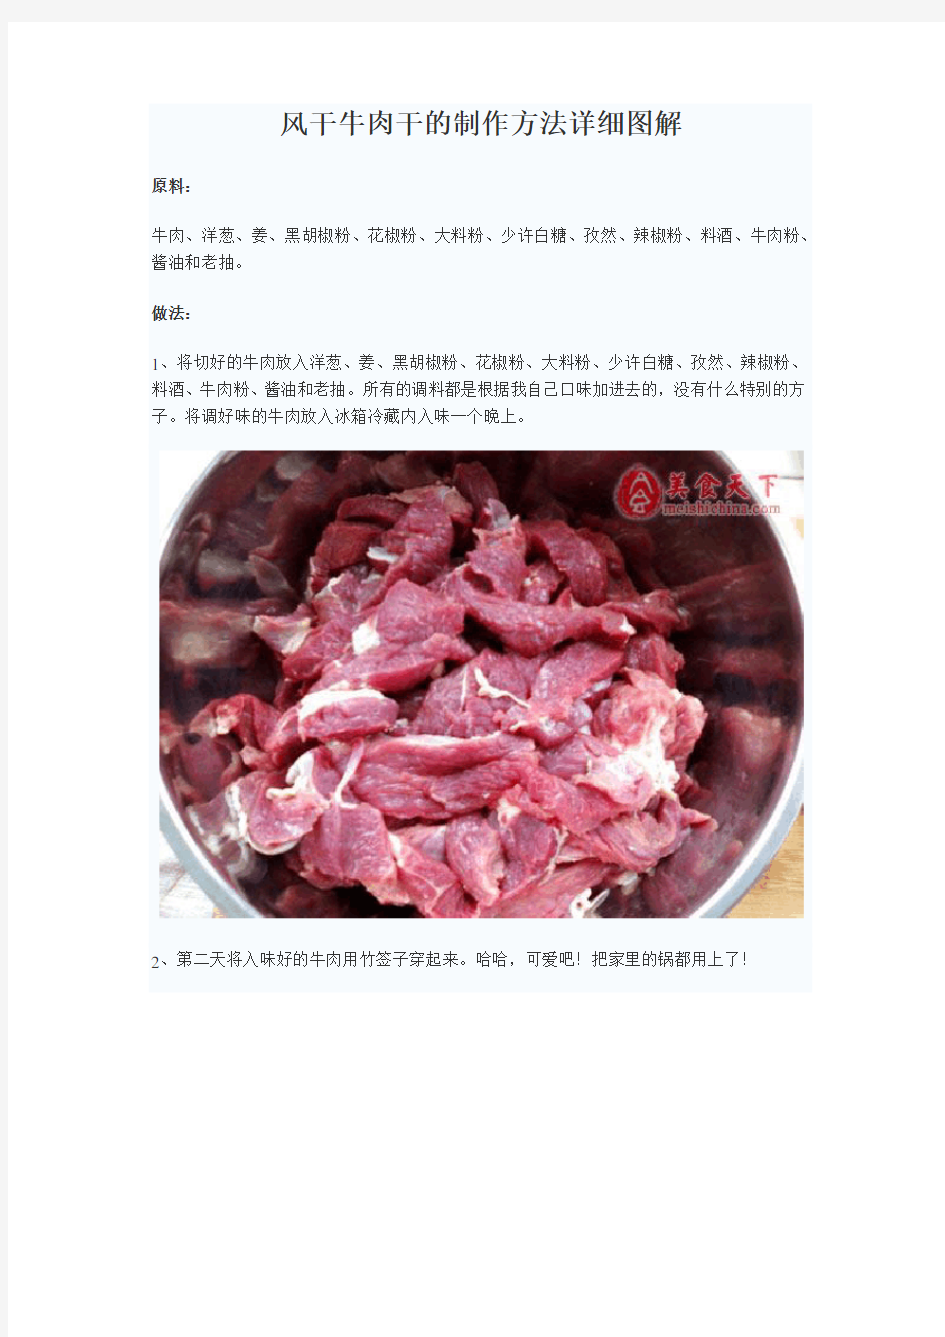 风干牛肉干的制作方法详细图解